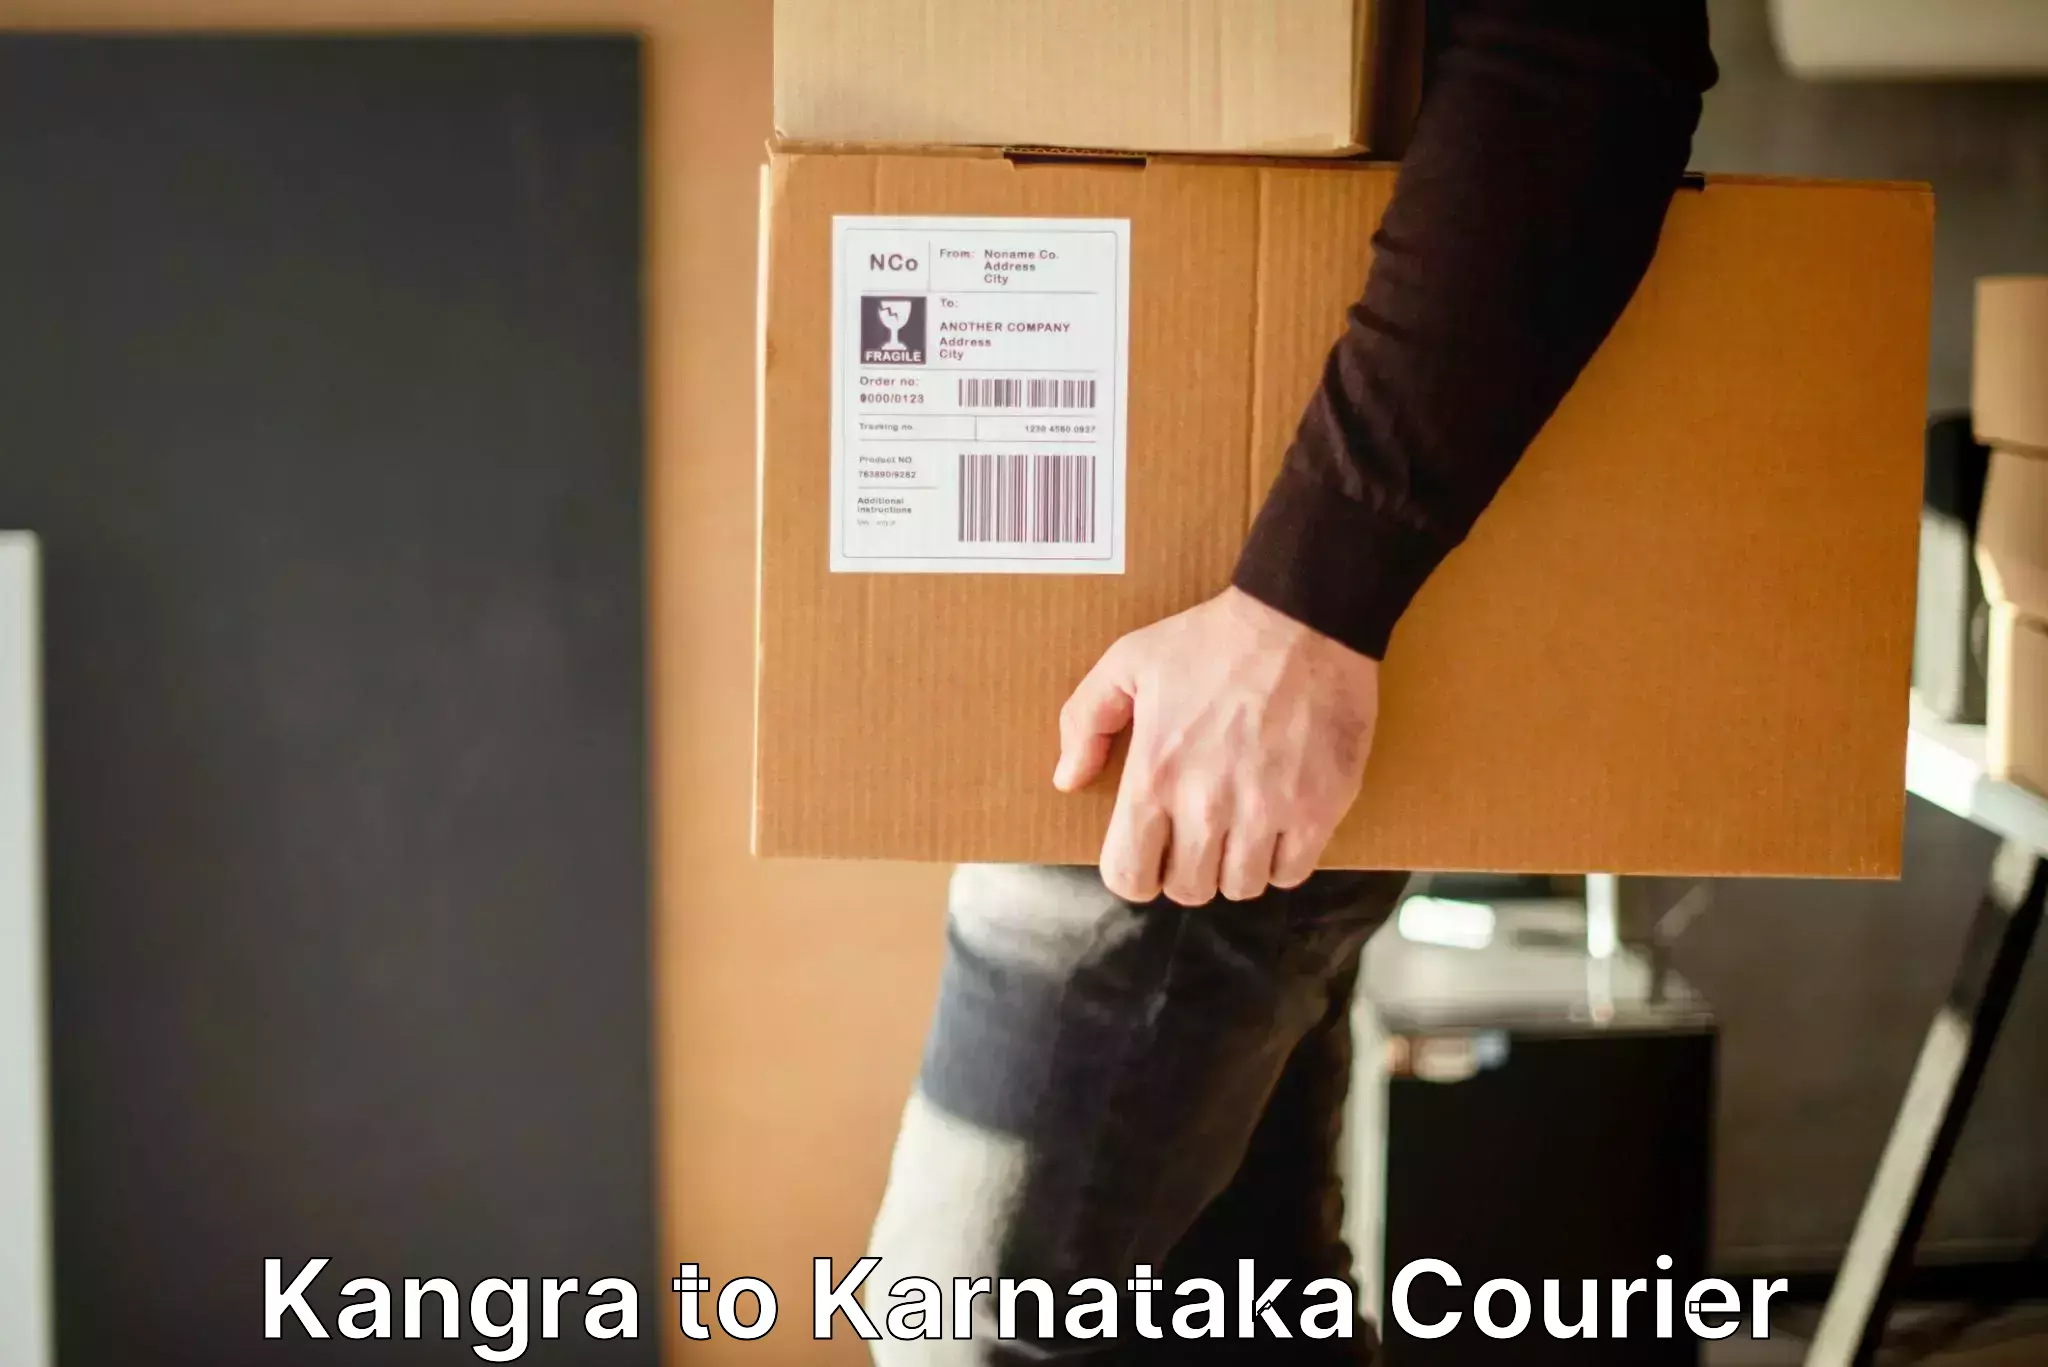 Baggage transport innovation Kangra to Deodurga